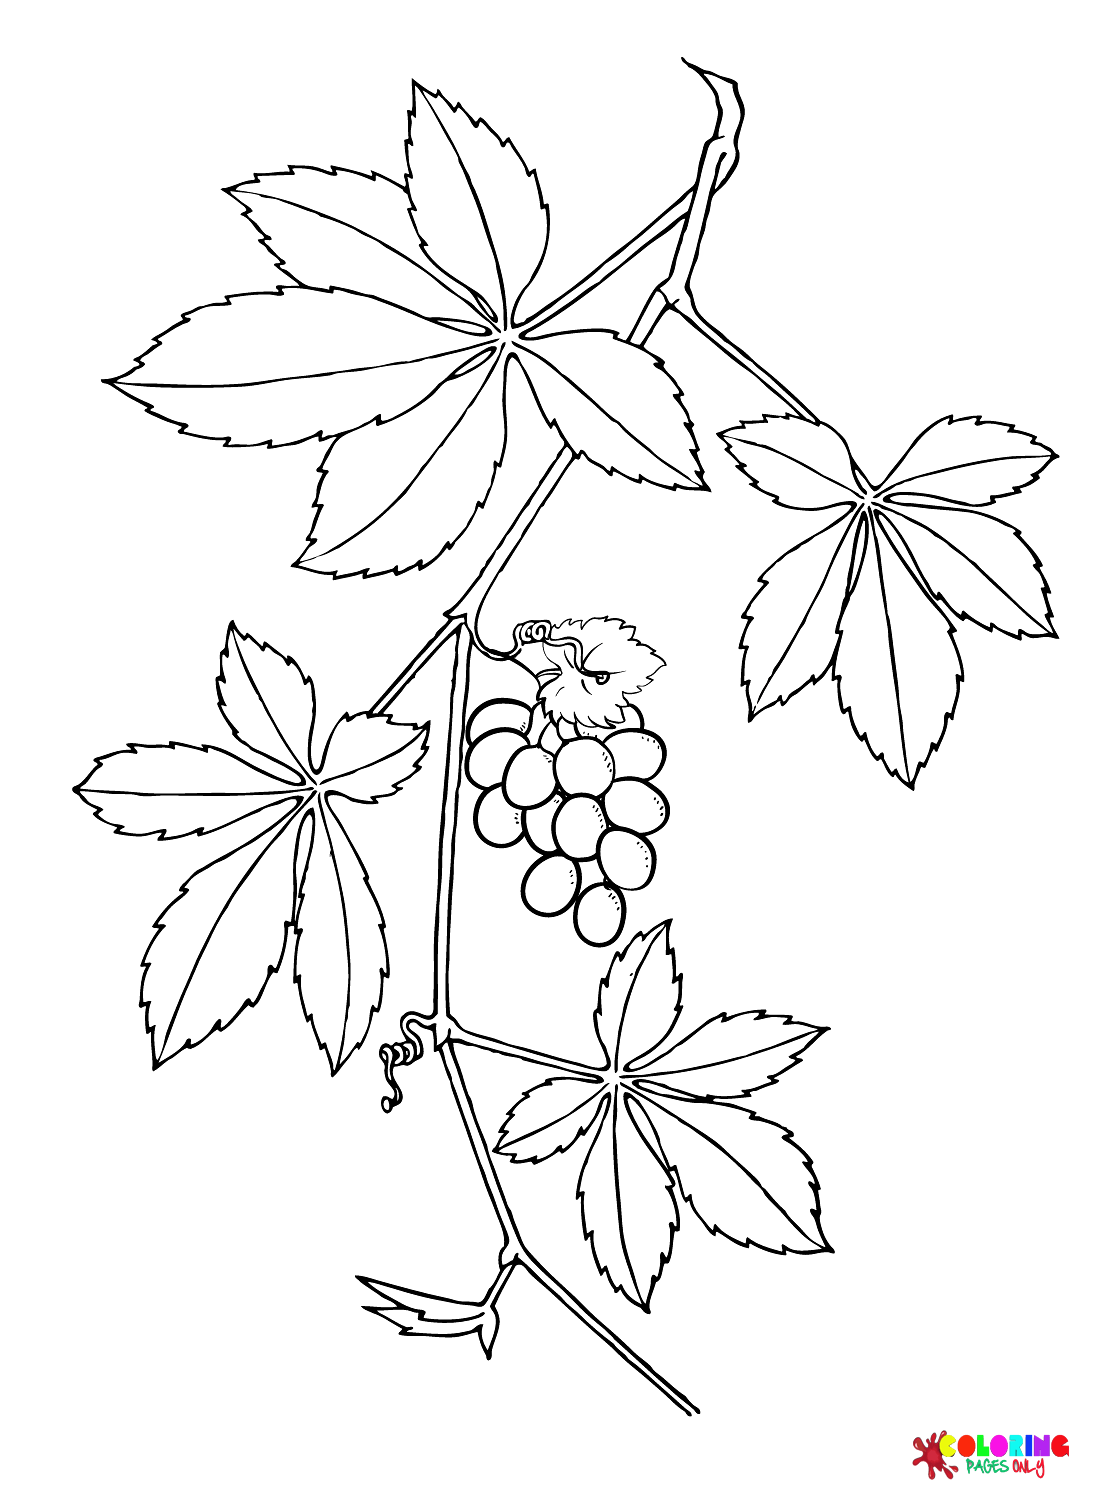 Foglie di uva rampicante dalle foglie